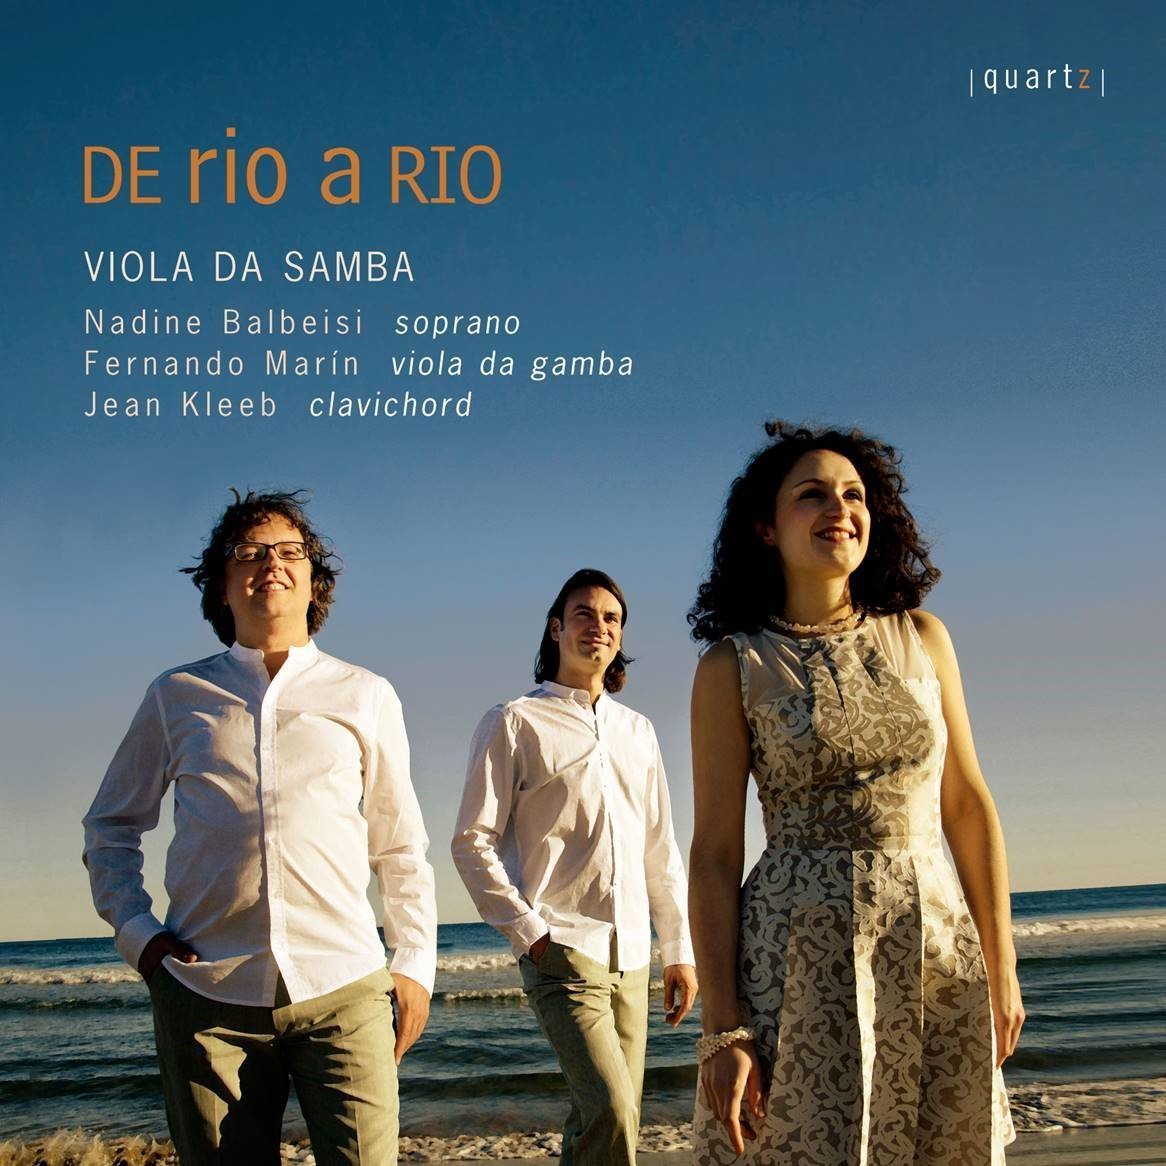 VIOLA DA SAMBA / DE RIO A RIO